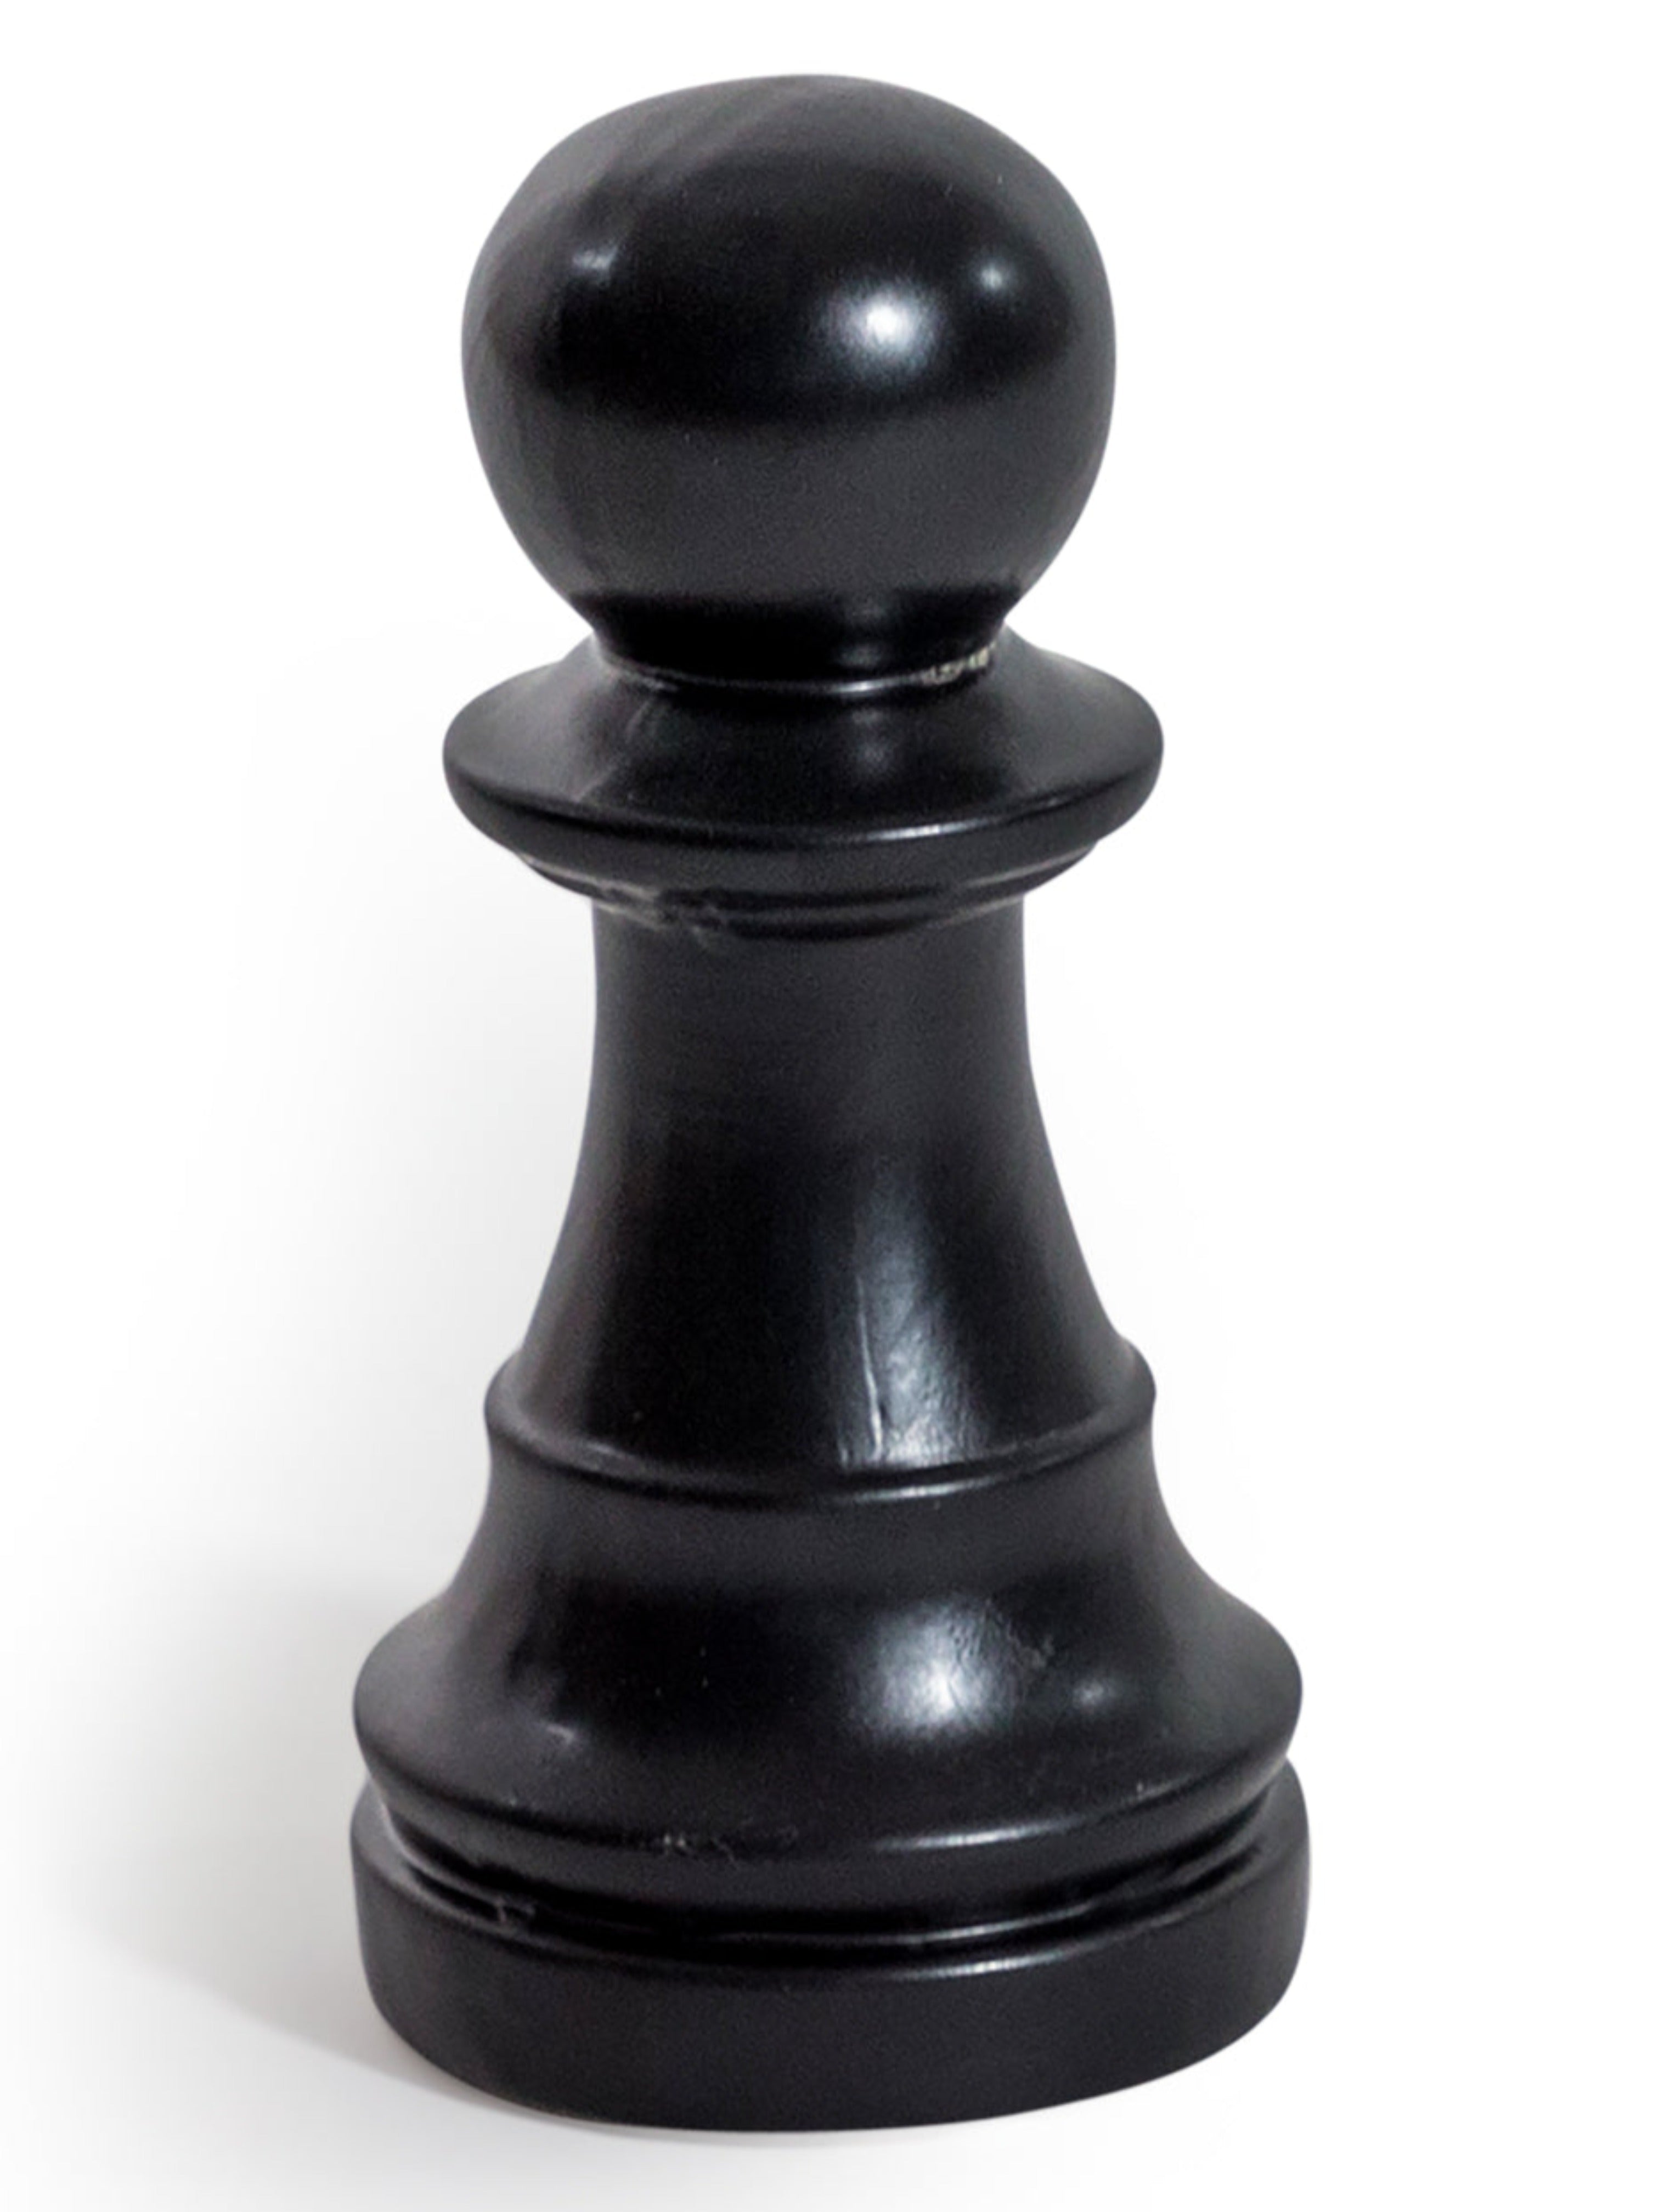 chehoma  Decorative items - Decorative items - Shiny black chess